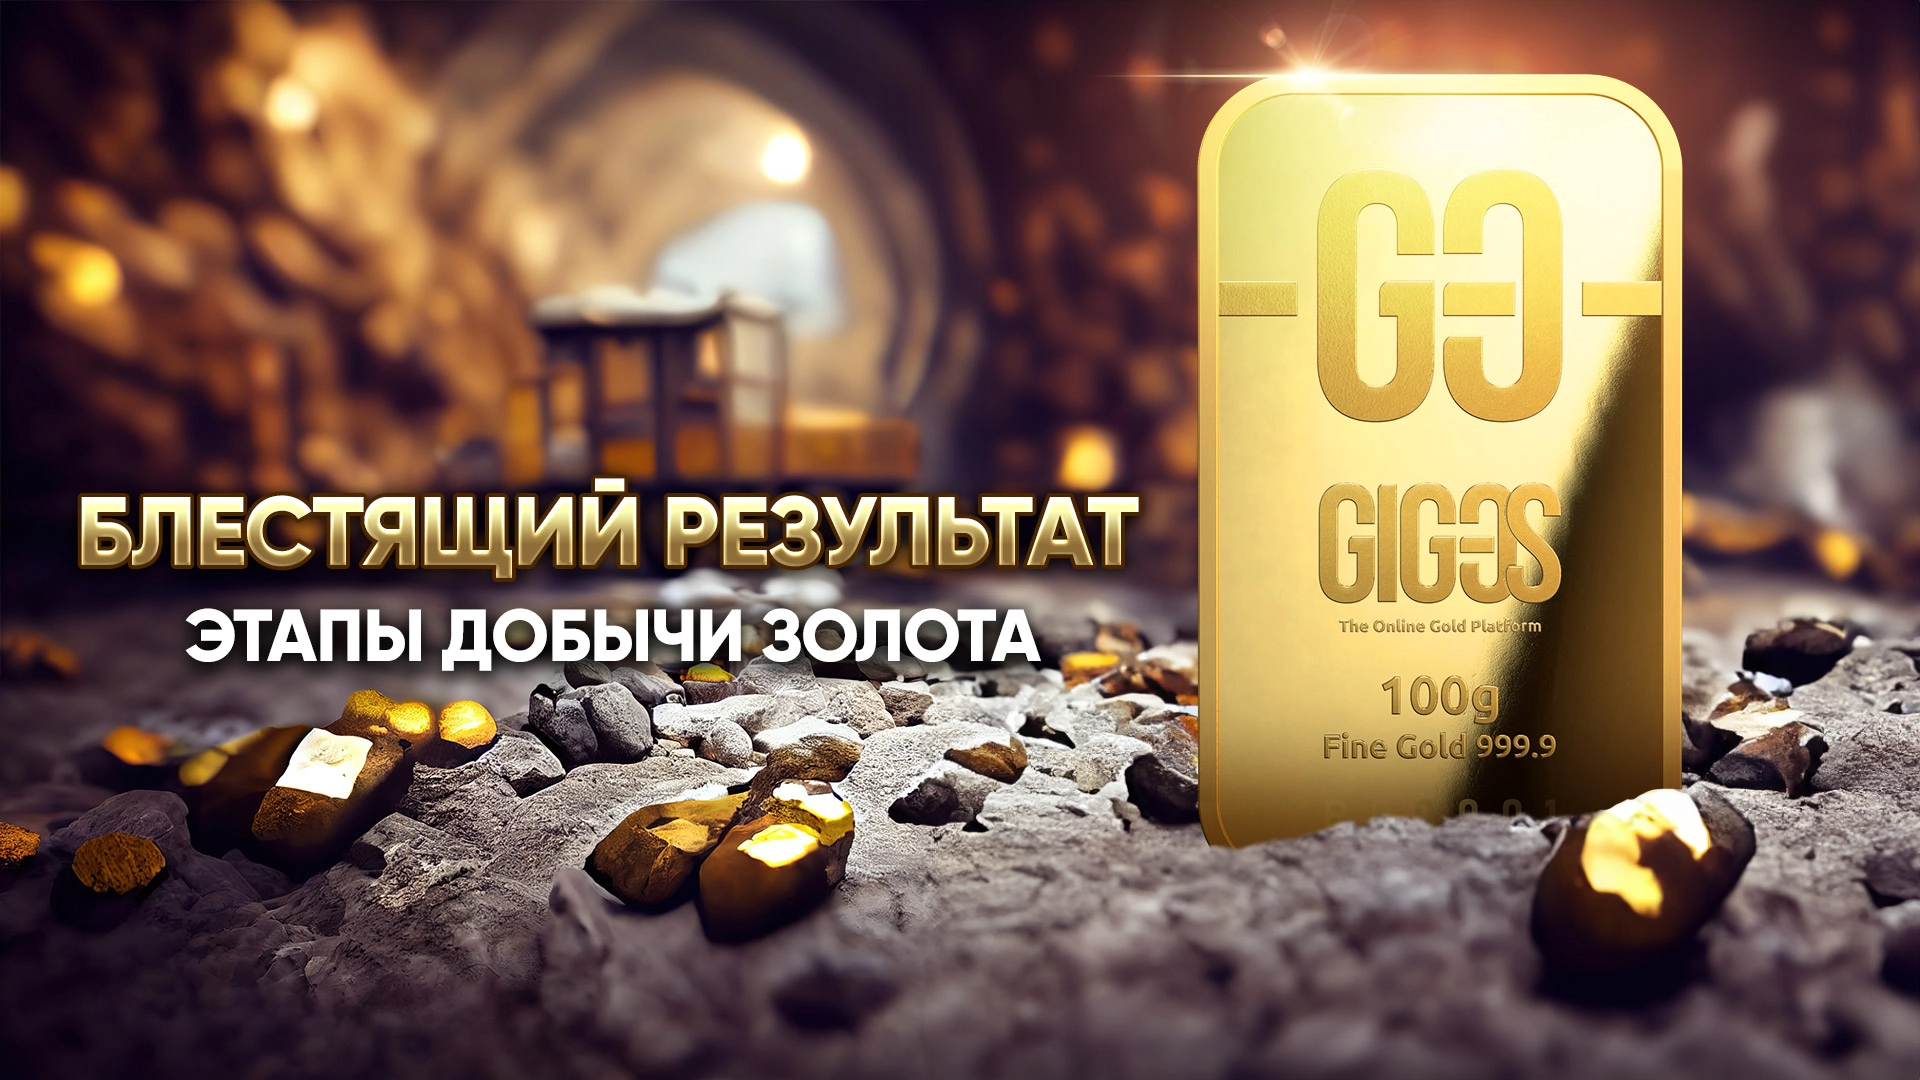 [ВИДЕО] «Путь золота»: от руды до золотых слитков